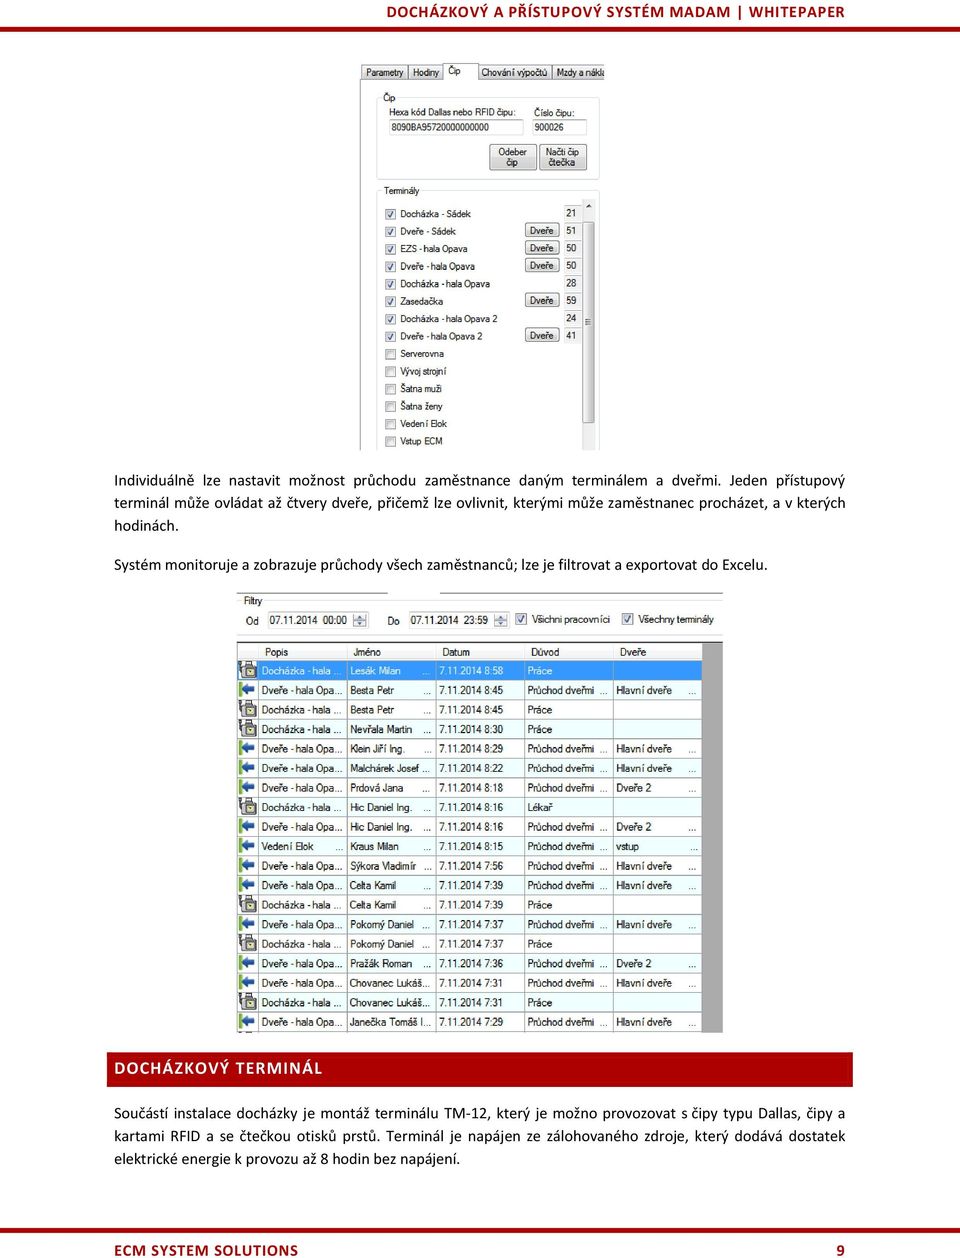 Systém monitoruje a zobrazuje průchody všech zaměstnanců; lze je filtrovat a exportovat do Excelu.